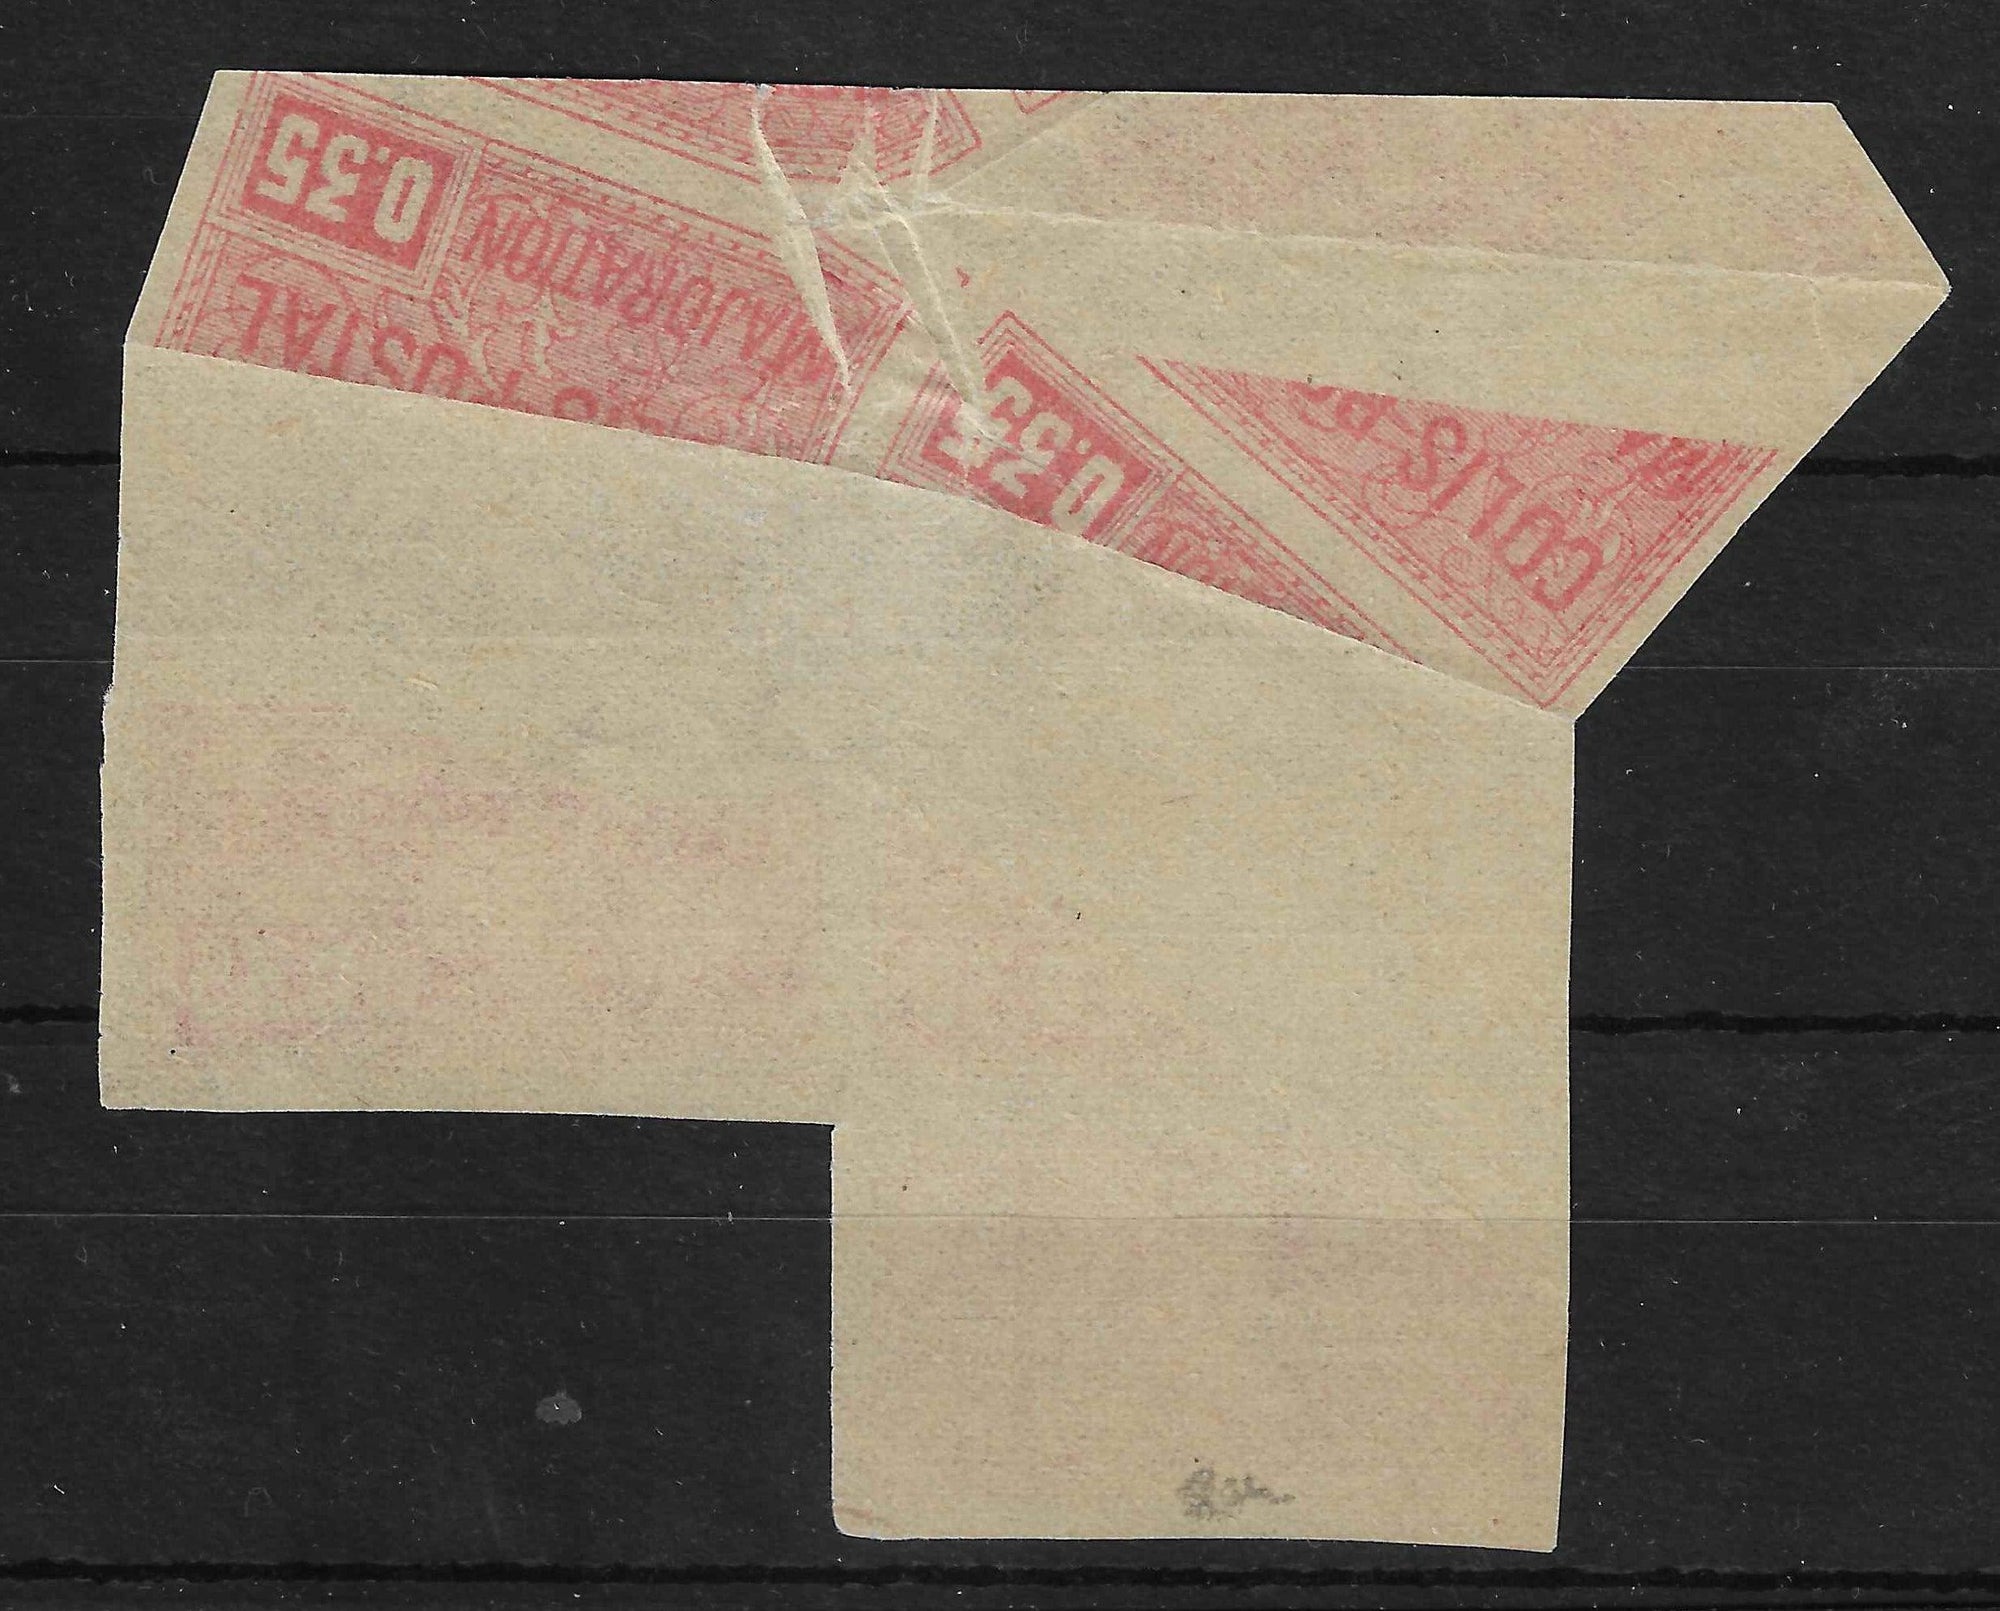 Colis postal n°20a - 35 c. rouge - impression incomplète par pliage - bloc de 3 exemplaires - neufs** - SUP - signé et avec certificat Calves - Calves